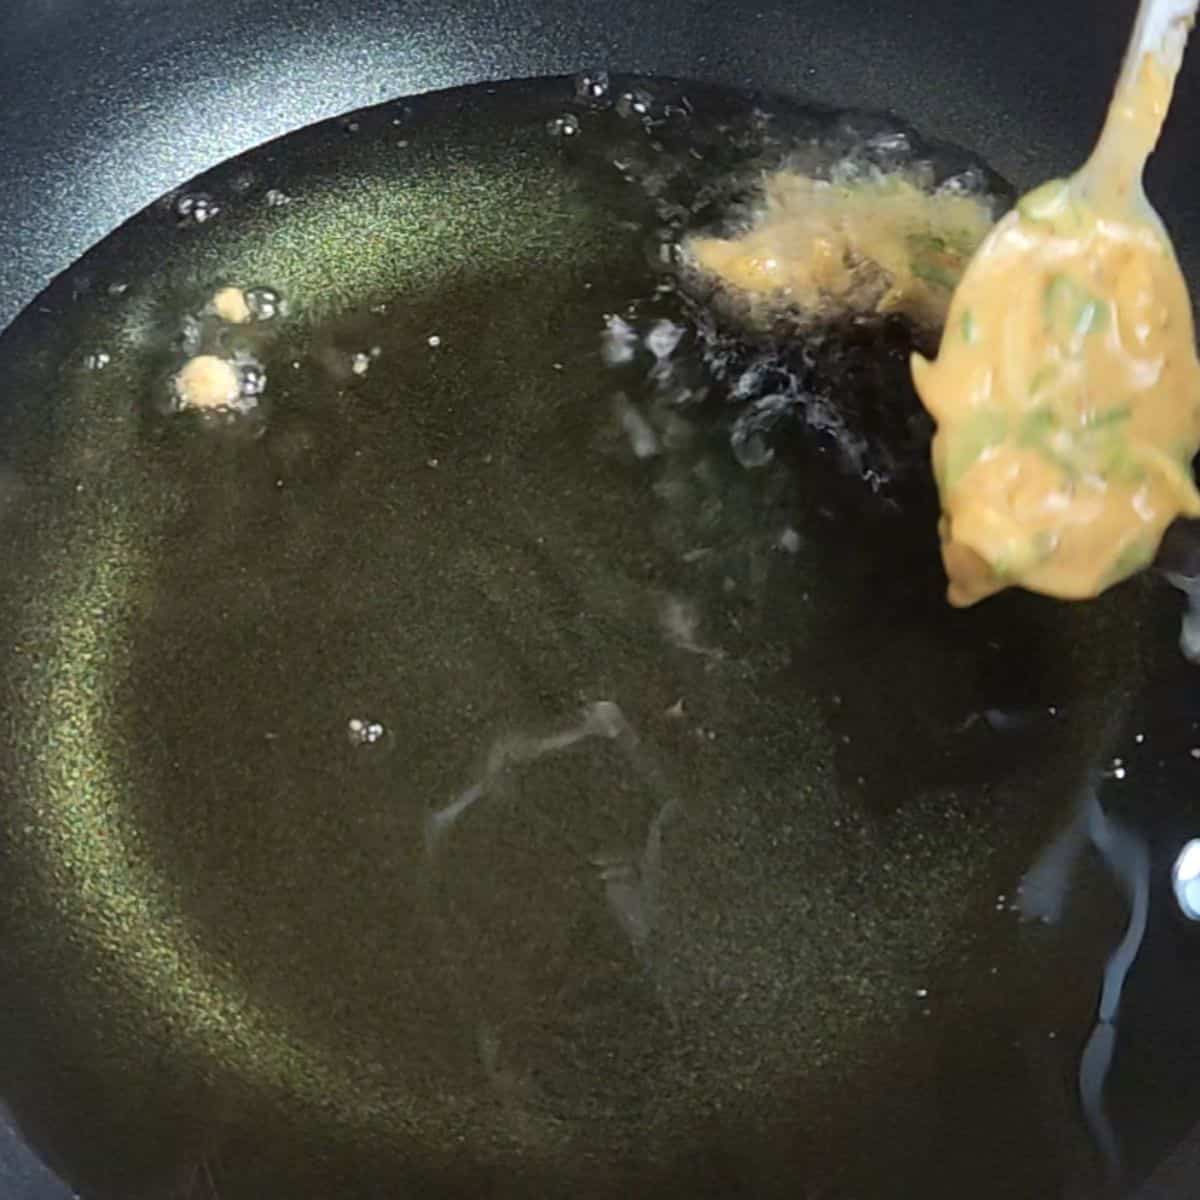 frying vegetable pakora in oil